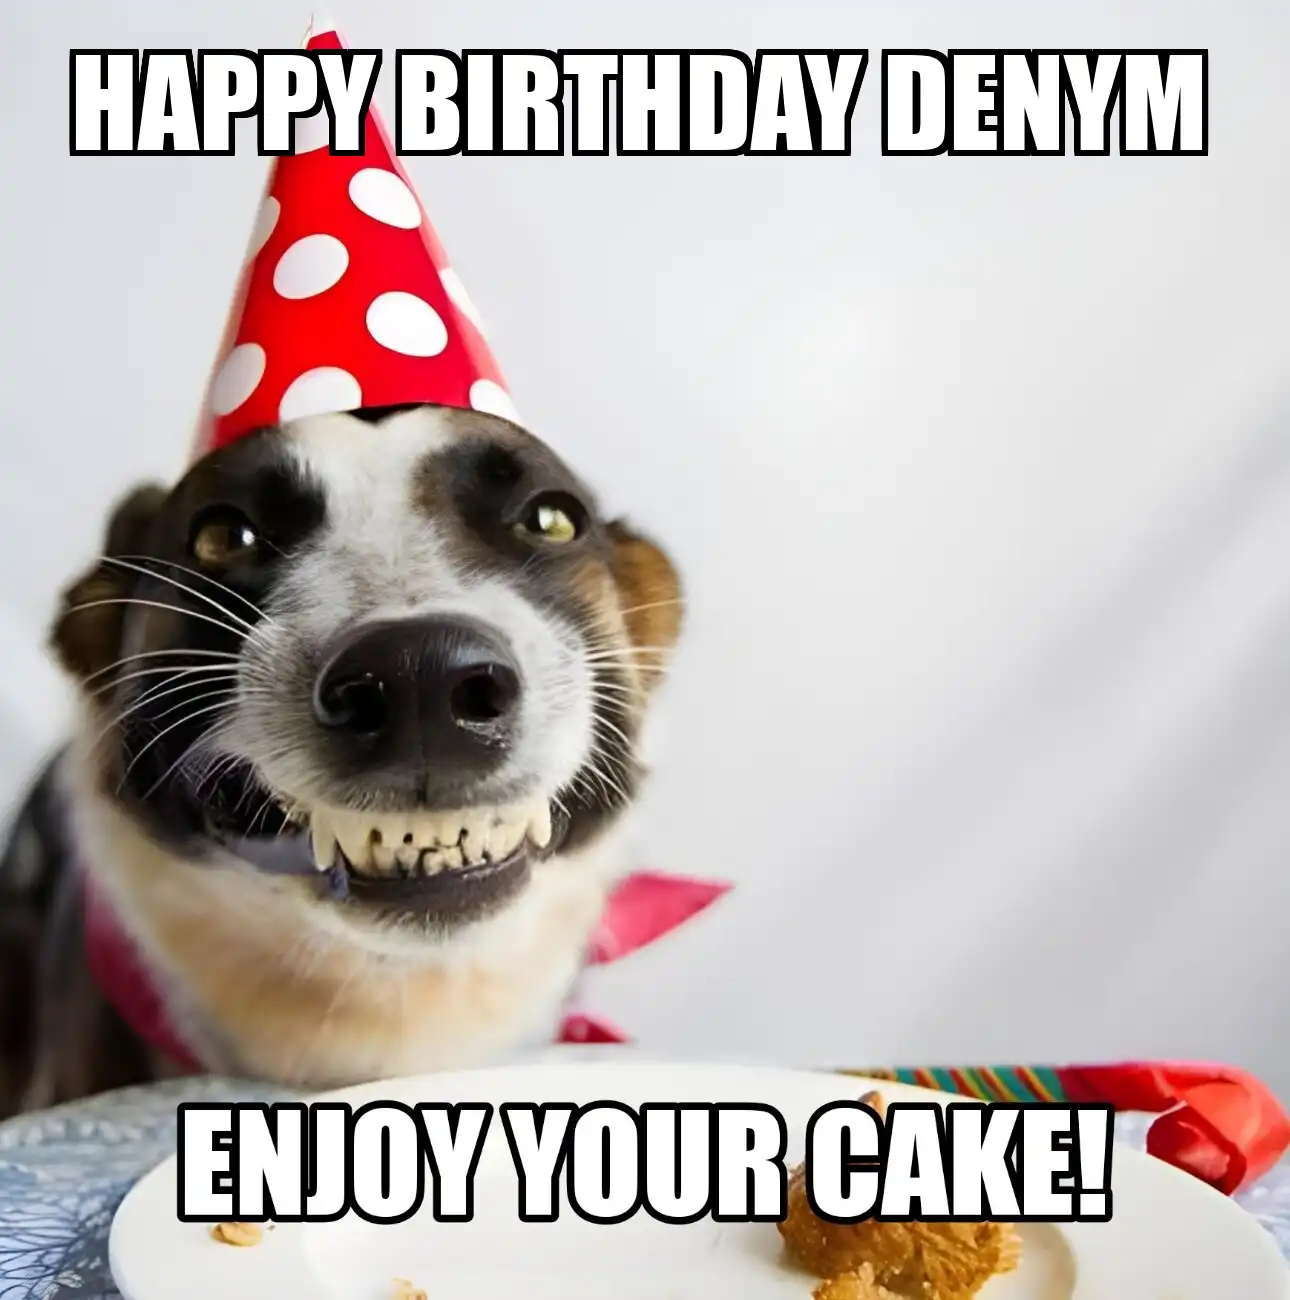 Happy Birthday Denym Enjoy Your Cake Dog Meme